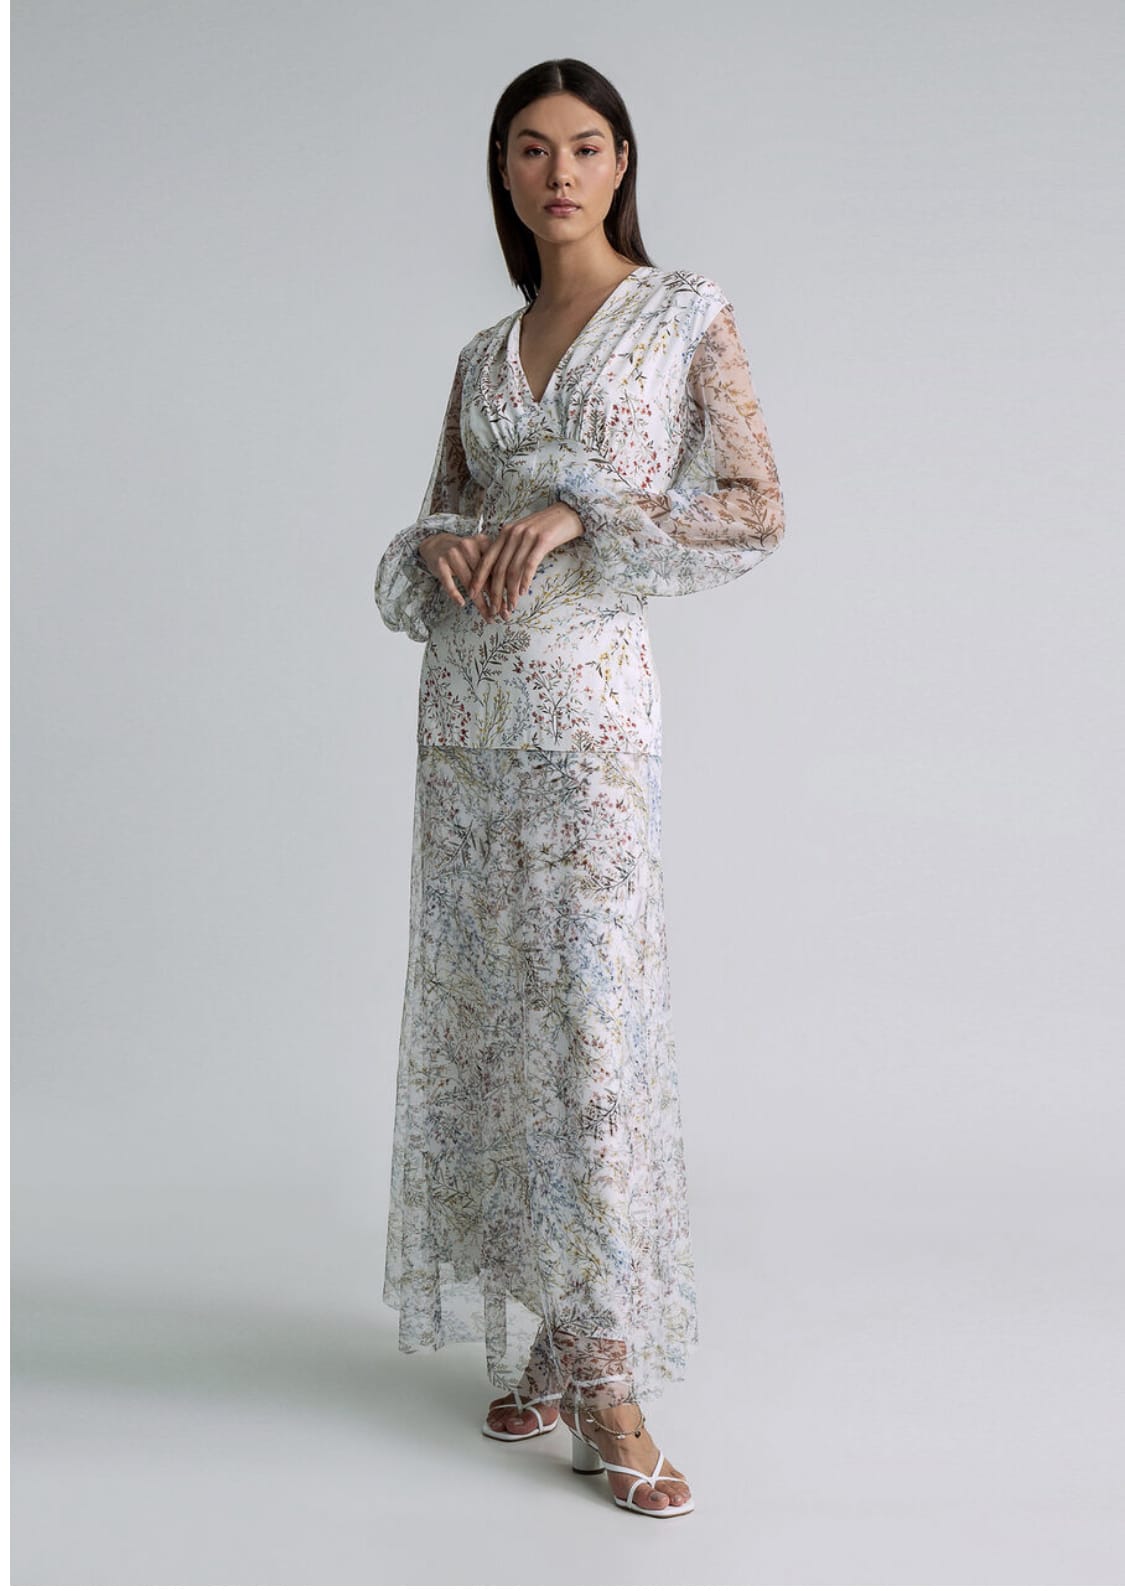 Vestido decote em V, mistura de 2 tecidos e padrão floral LEZ A LEZ